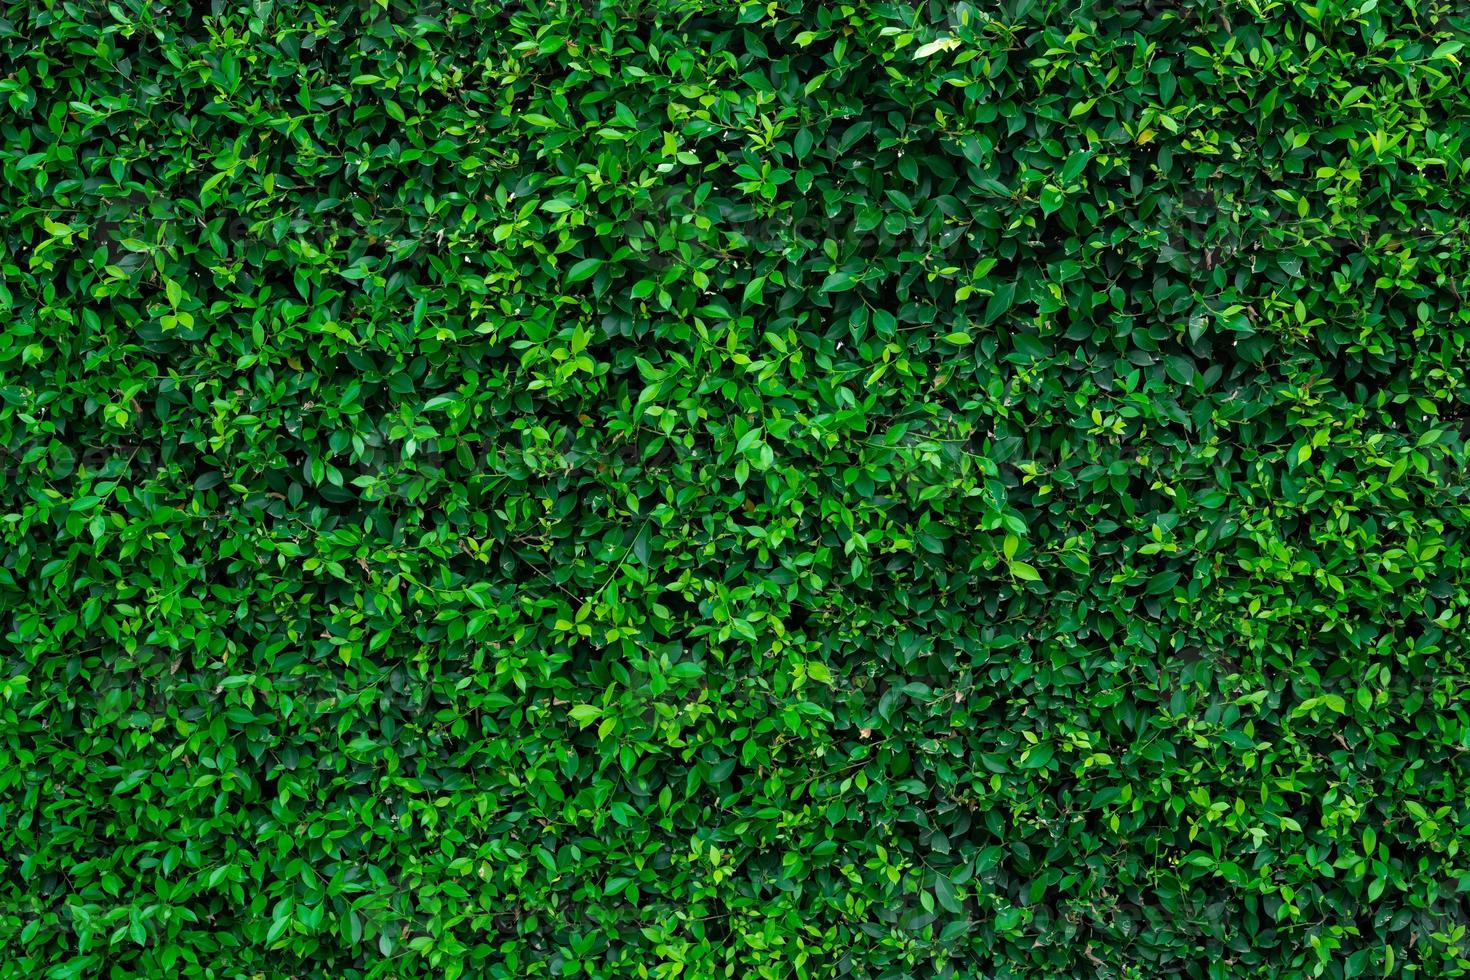 pequeñas hojas verdes en el fondo de textura de pared de cobertura. primer plano de la planta de cobertura verde en el jardín. pared de seto de hoja perenne ecológica. telón de fondo natural. belleza en la naturaleza. hojas verdes con papel tapiz de patrón natural. foto